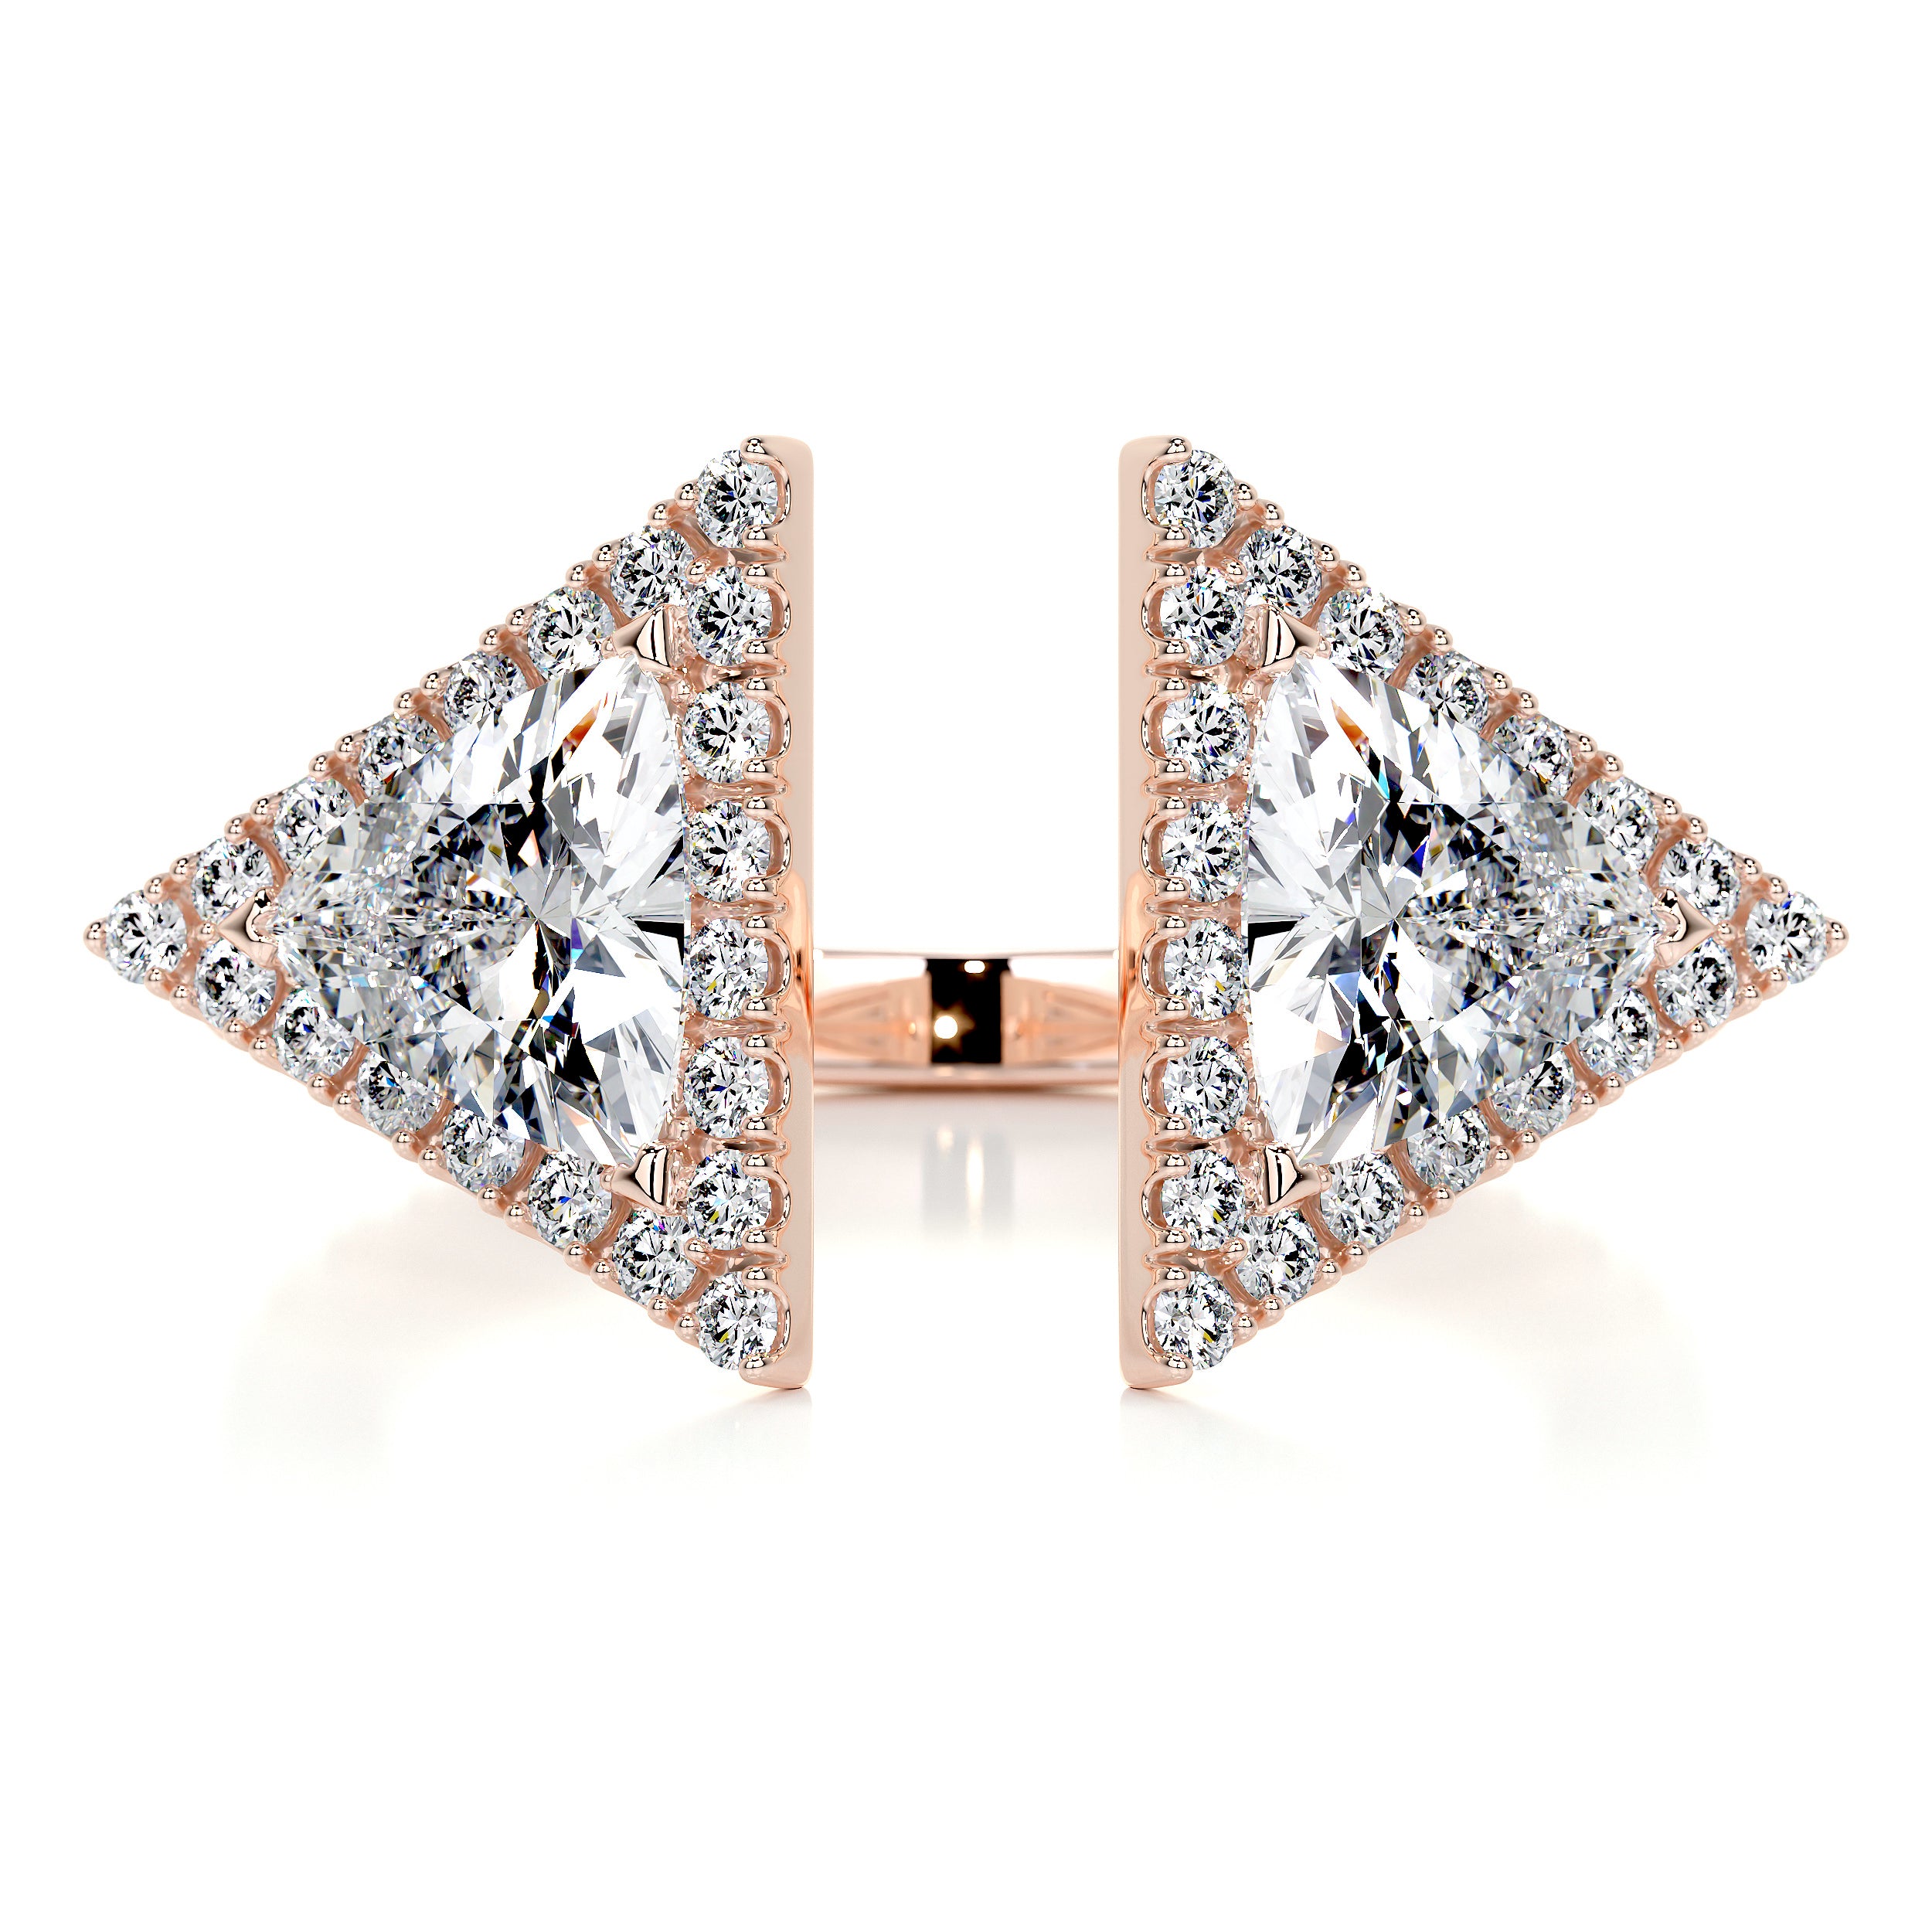 Jade Fashion Diamond Ring   (1.5 carat) -14K Rose Gold